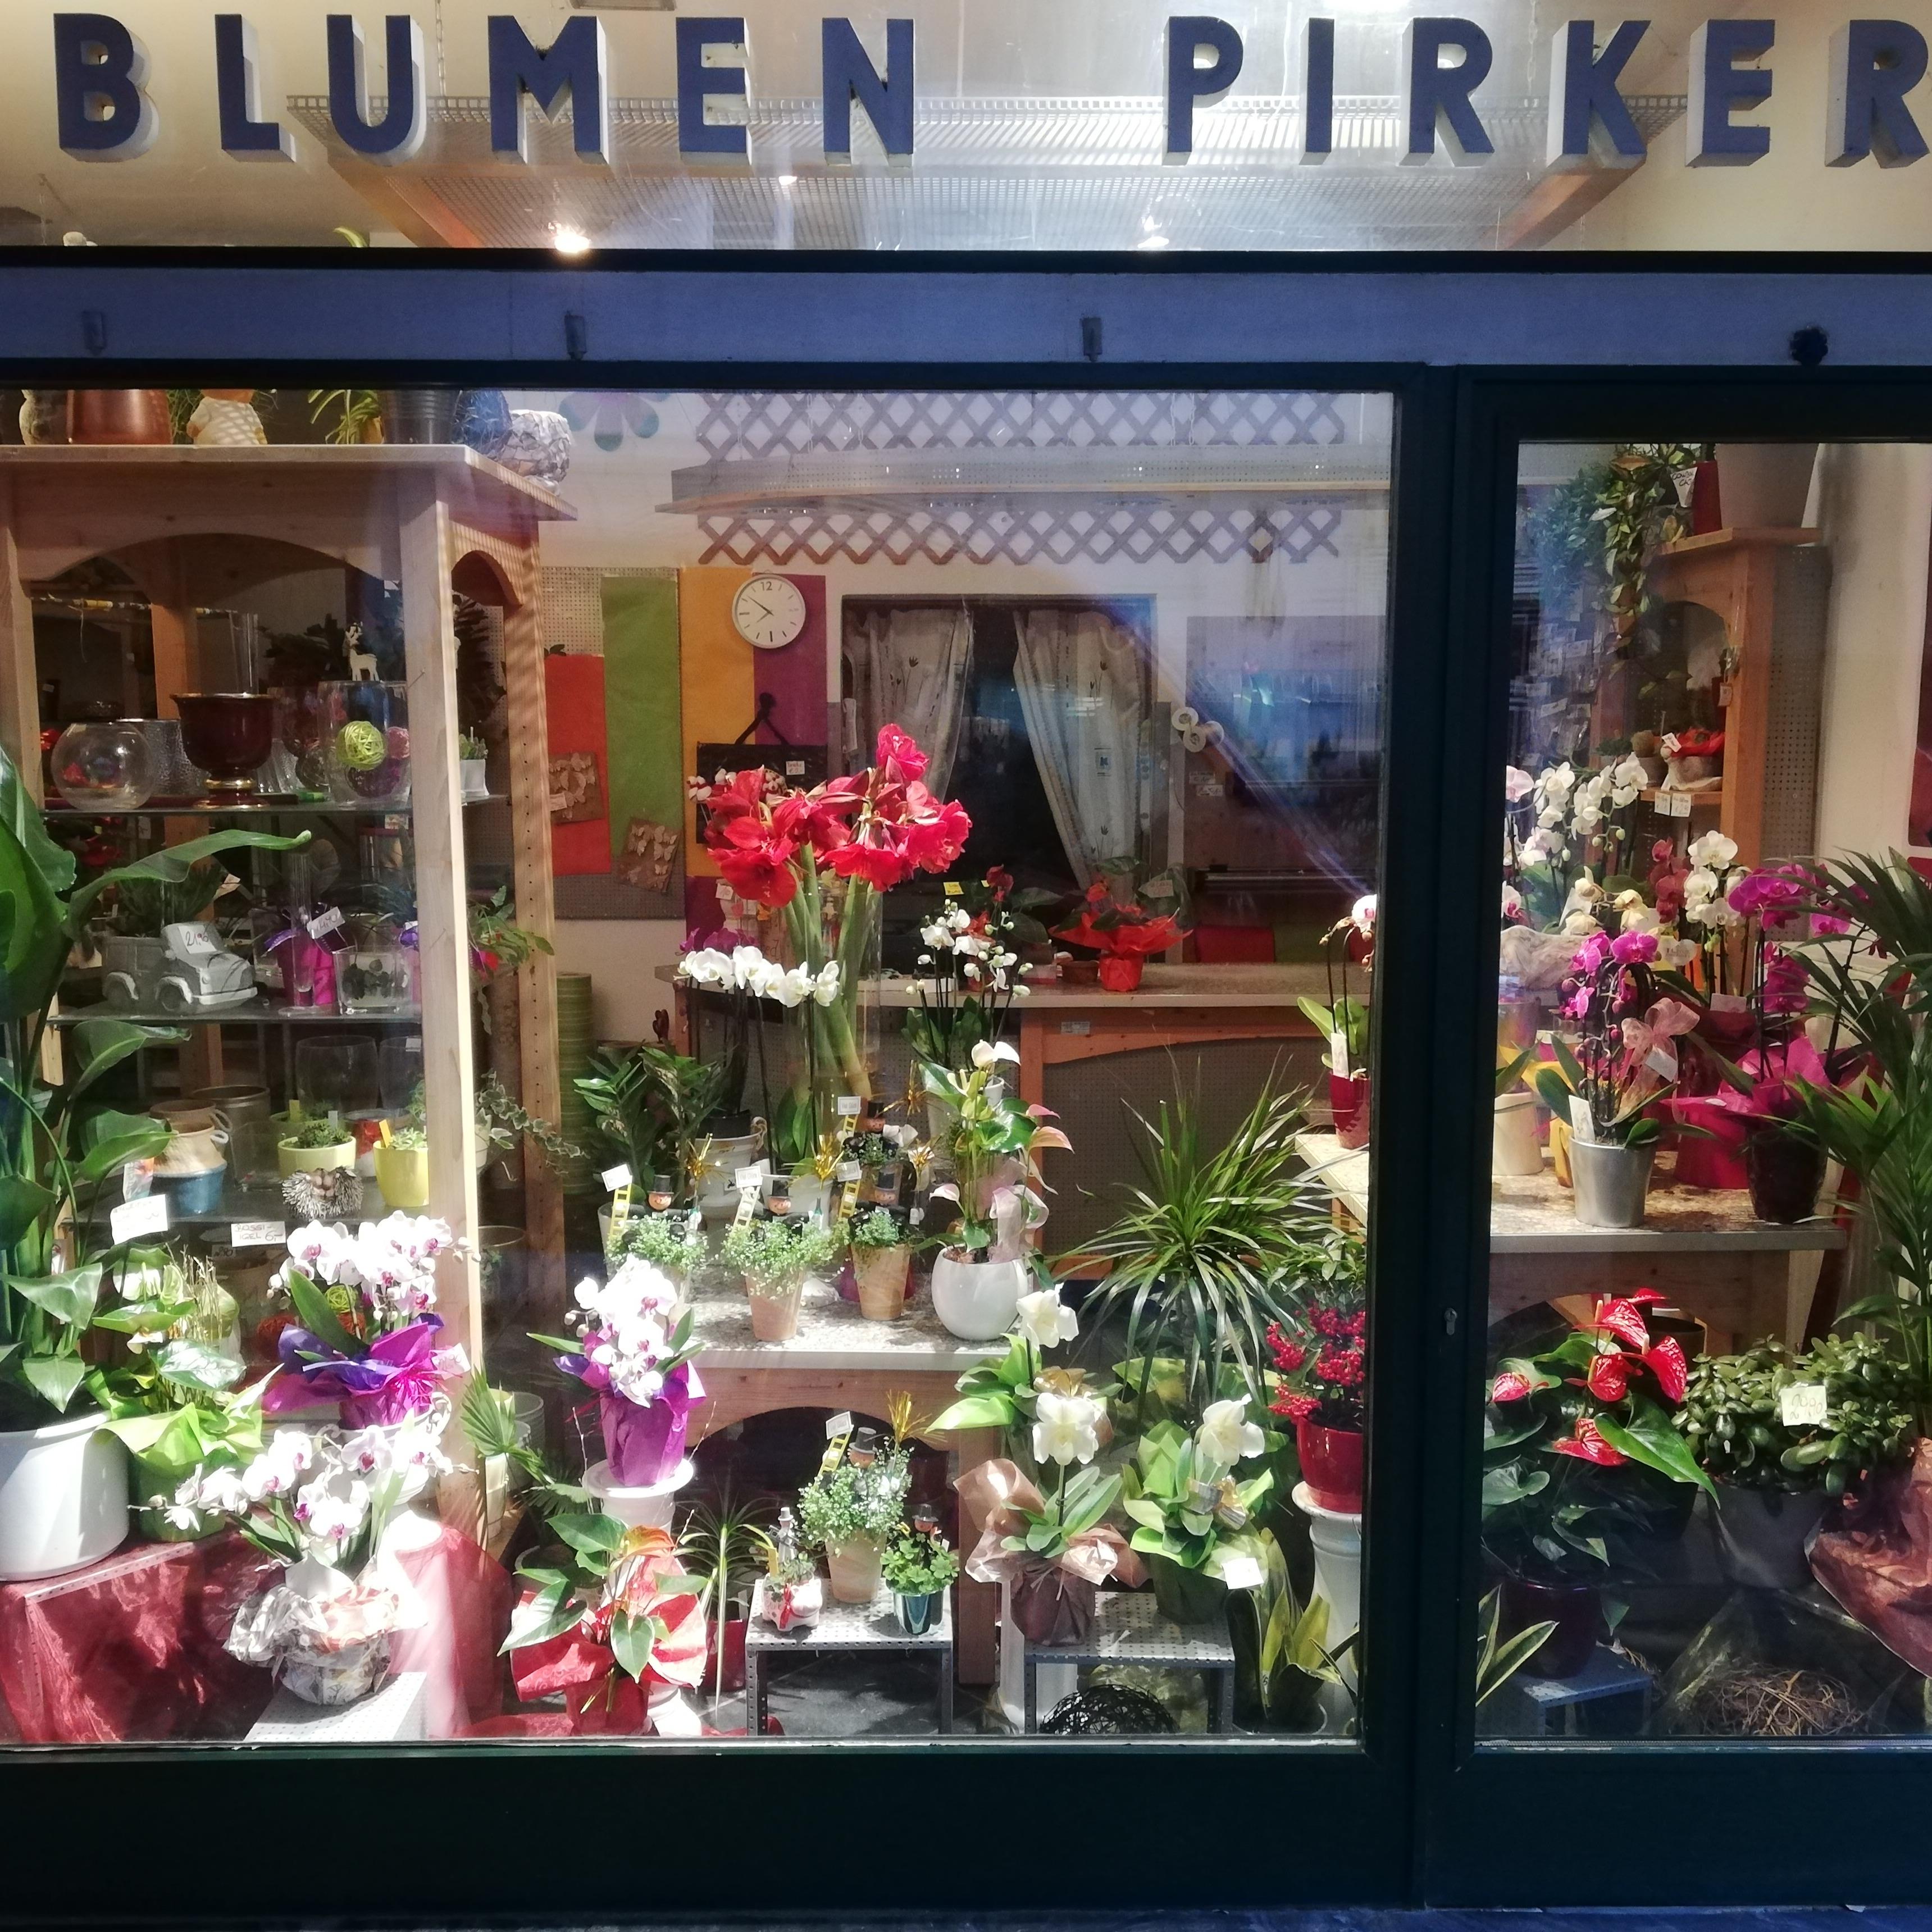 Blumen Pirker in Krems an der Donau